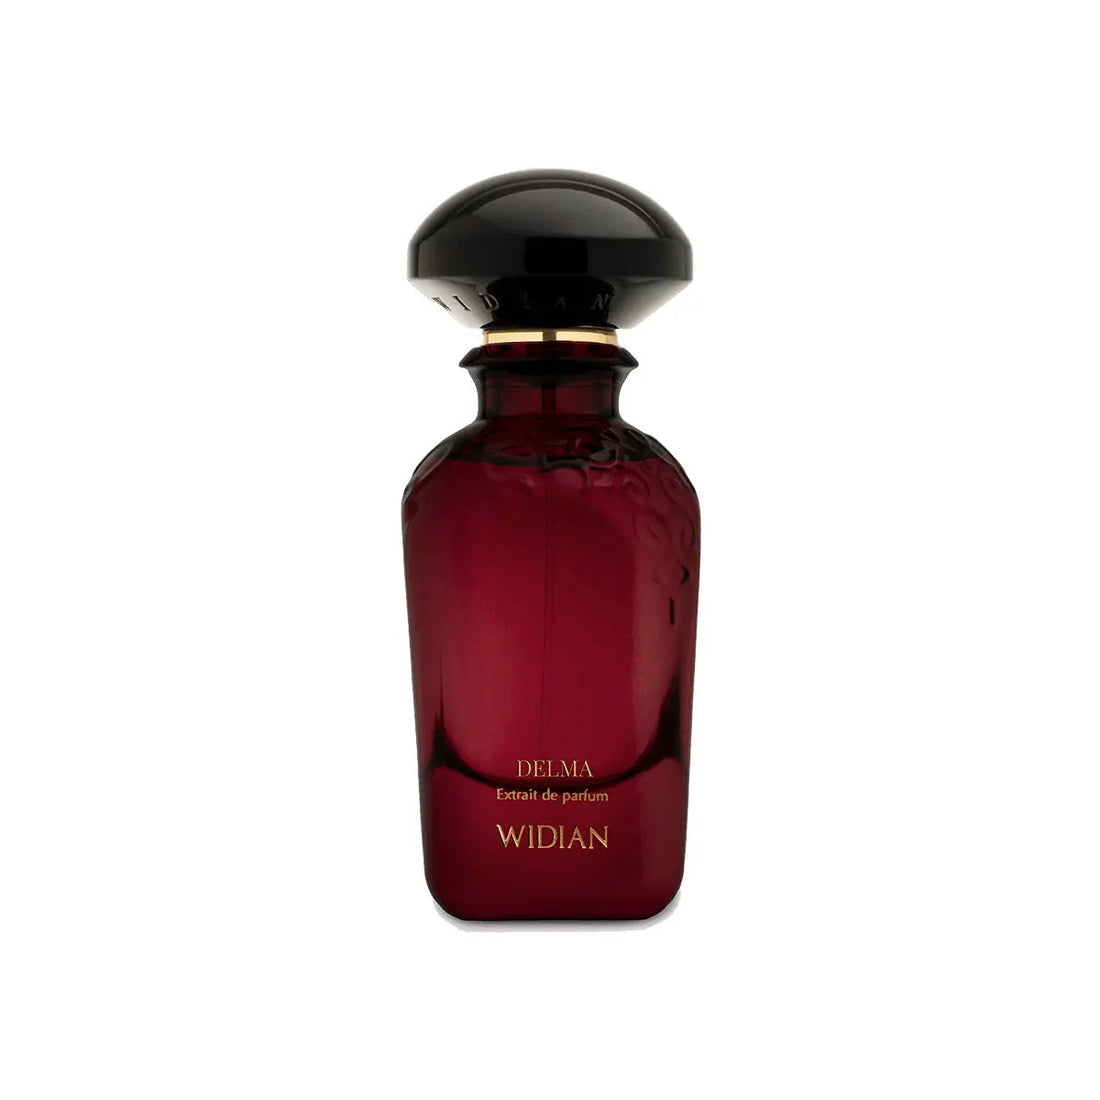 Widian Delma Perfume Extract - 50 ml